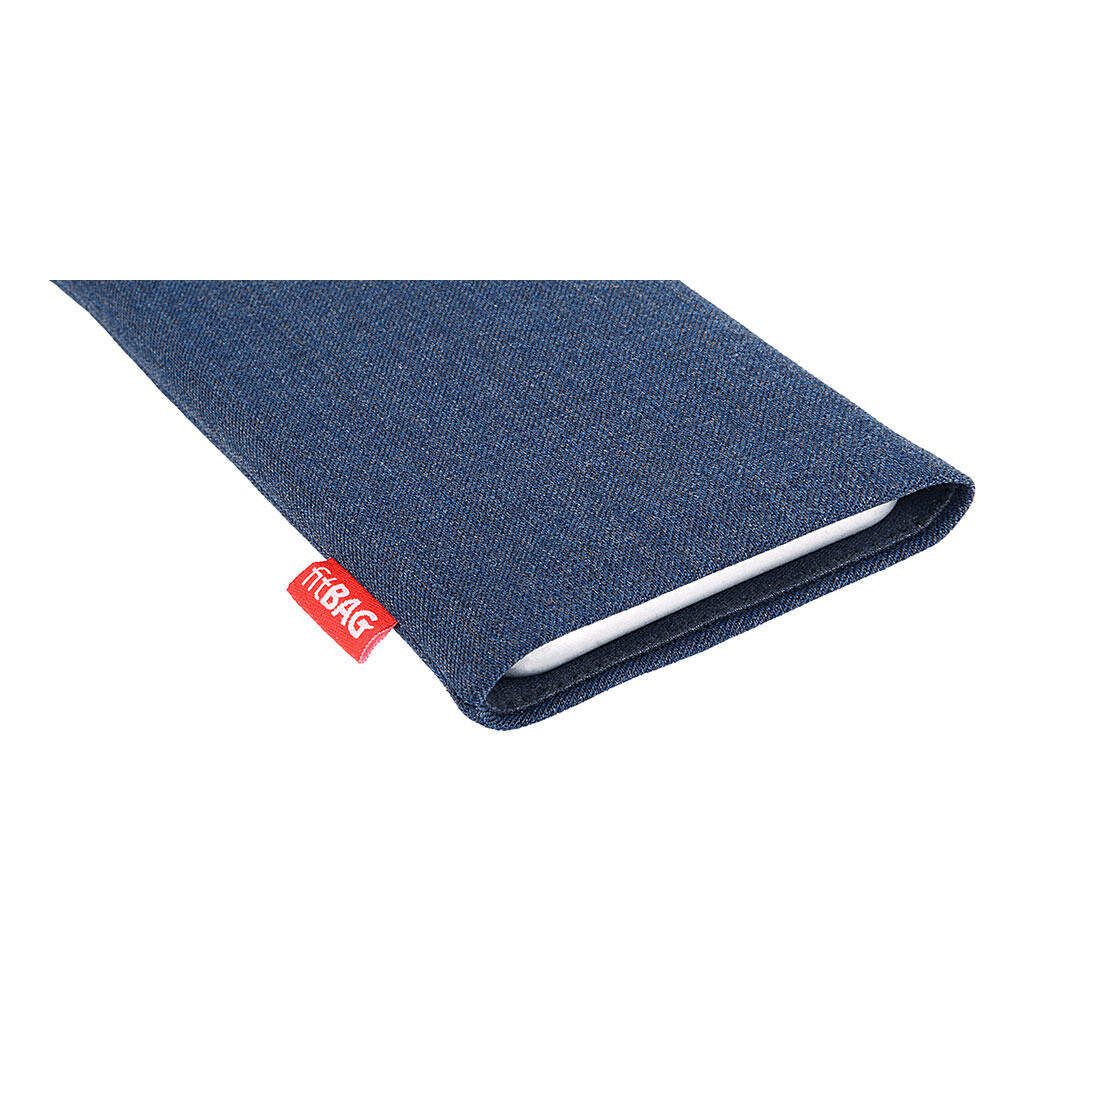 SM-G970F fitBAG Jive Blau Handytasche Tasche aus Textil-Stoff mit Microfaserinnenfutter für Samsung Galaxy S10e | Hülle mit Reinigungsfunktion Made in Germany 